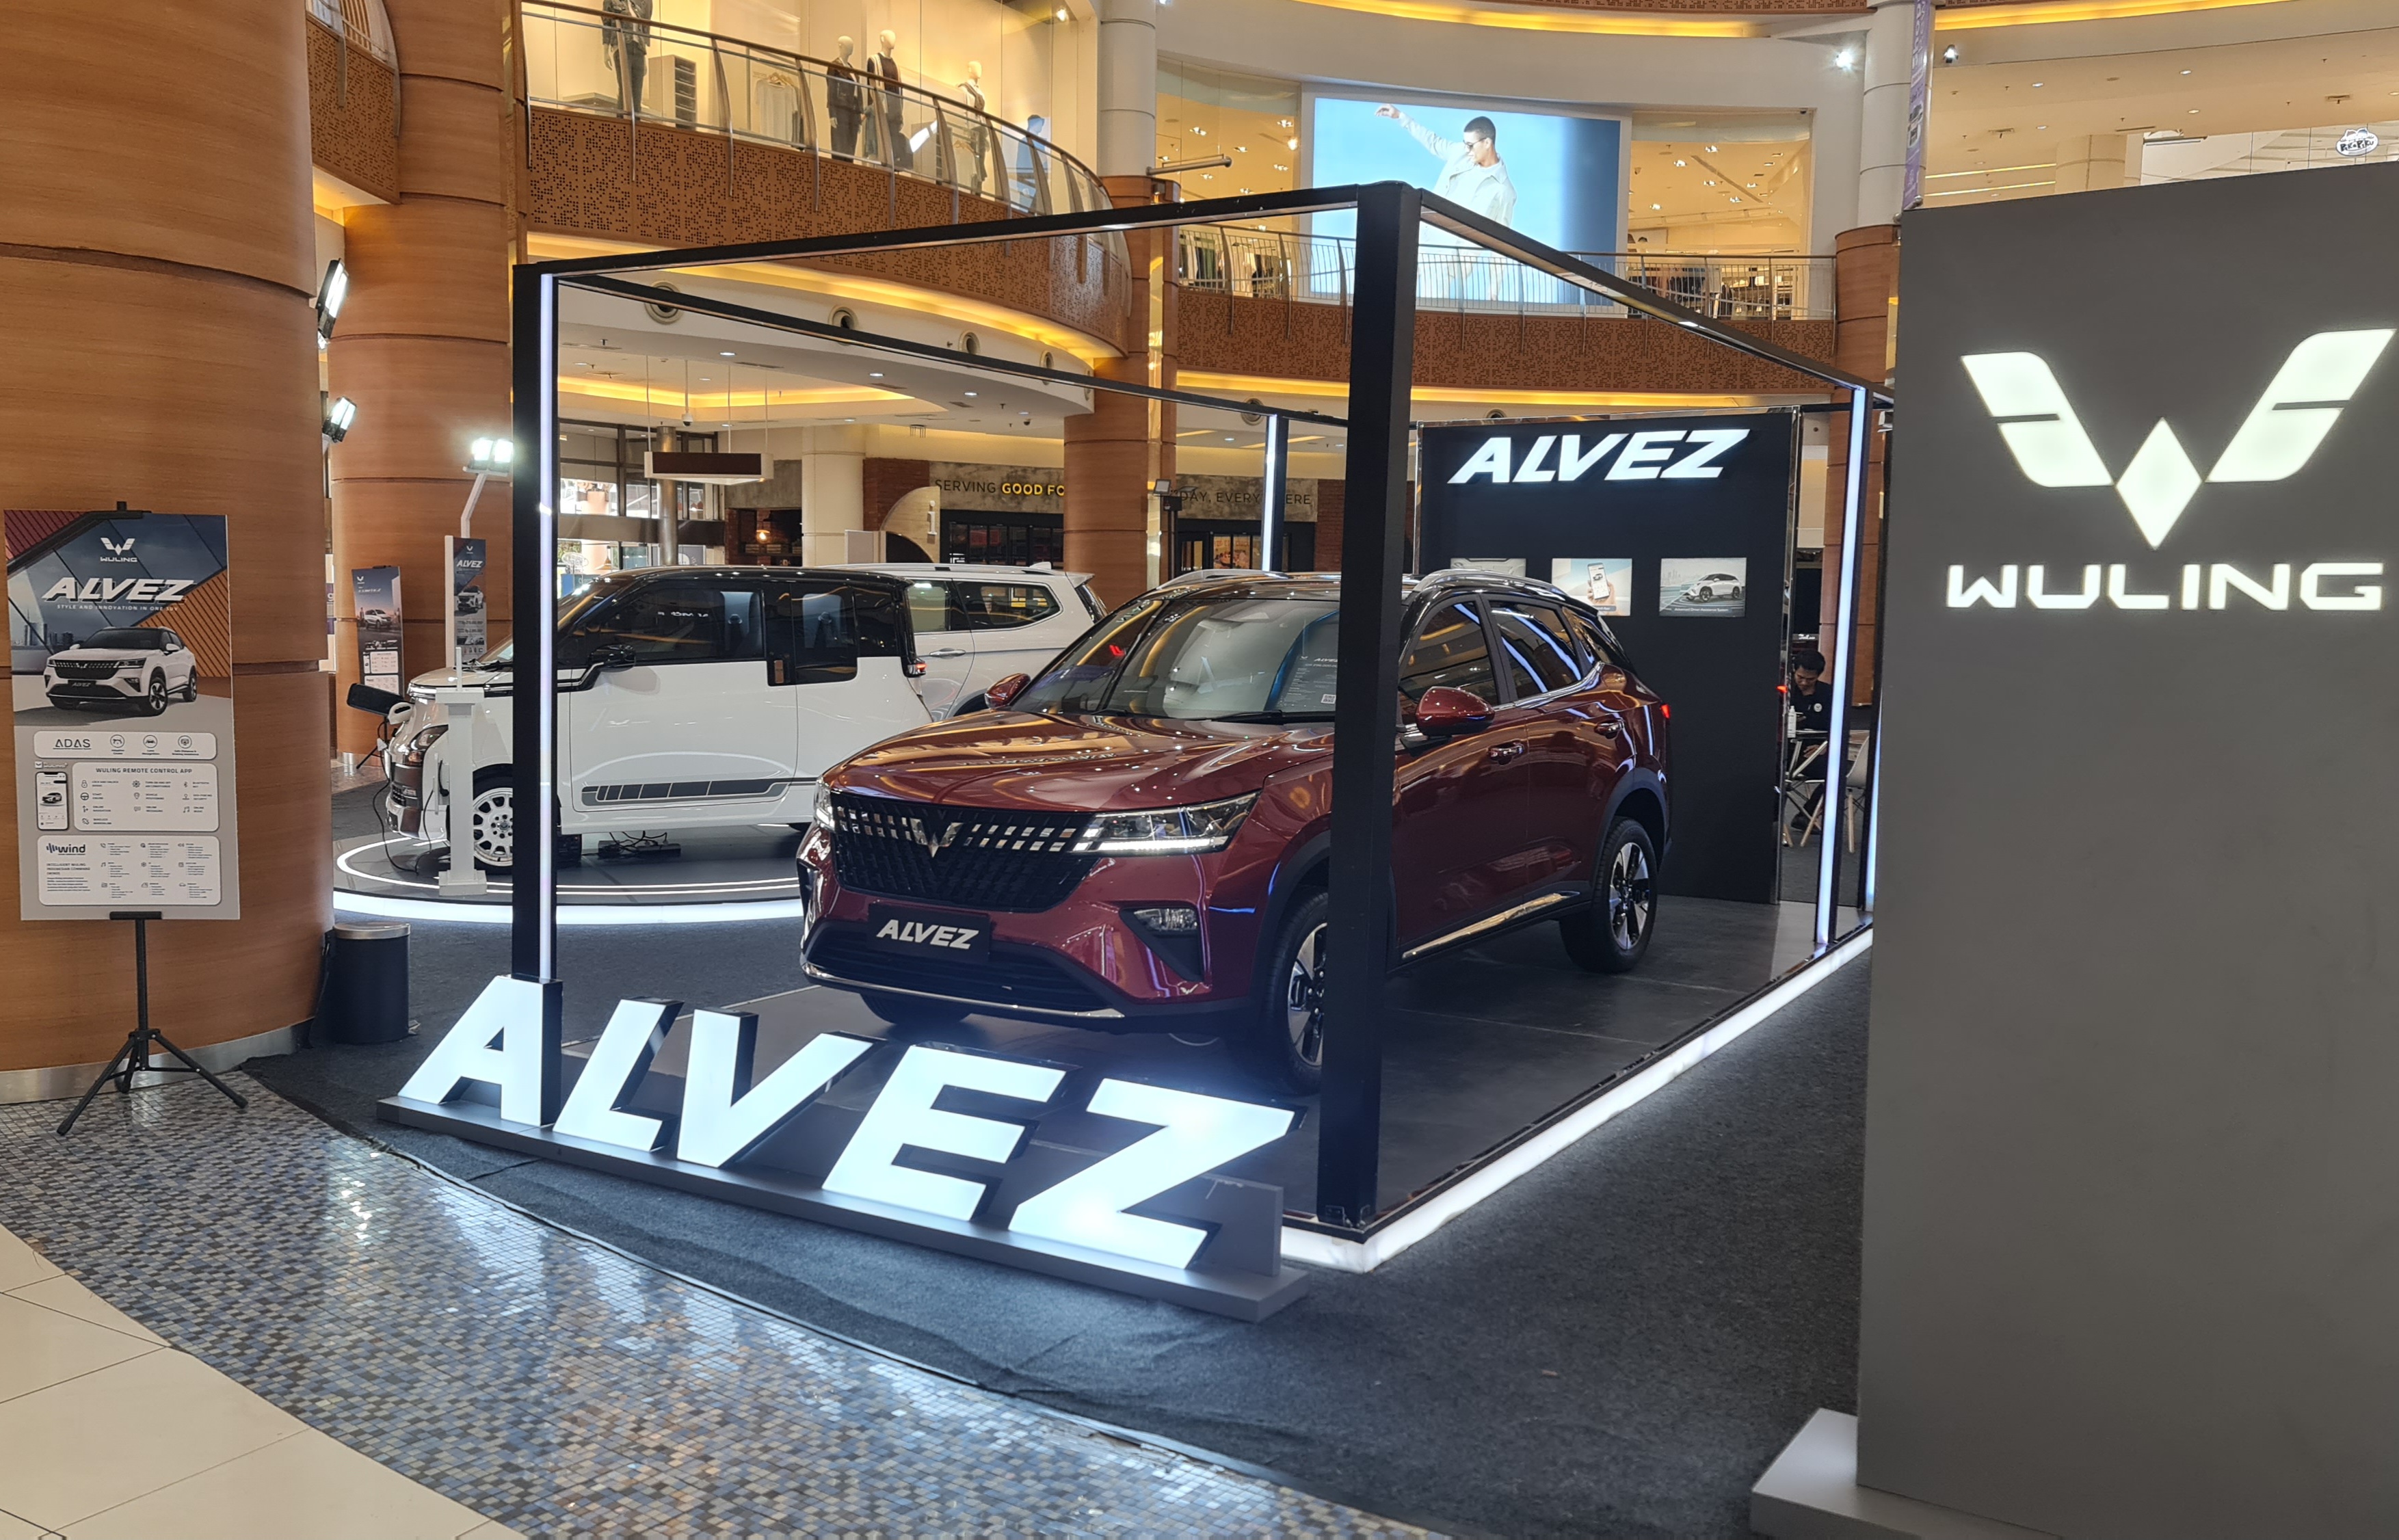 Image Alvez, Compact SUV Terbaru dari Wuling Resmi Meluncur di Tangerang